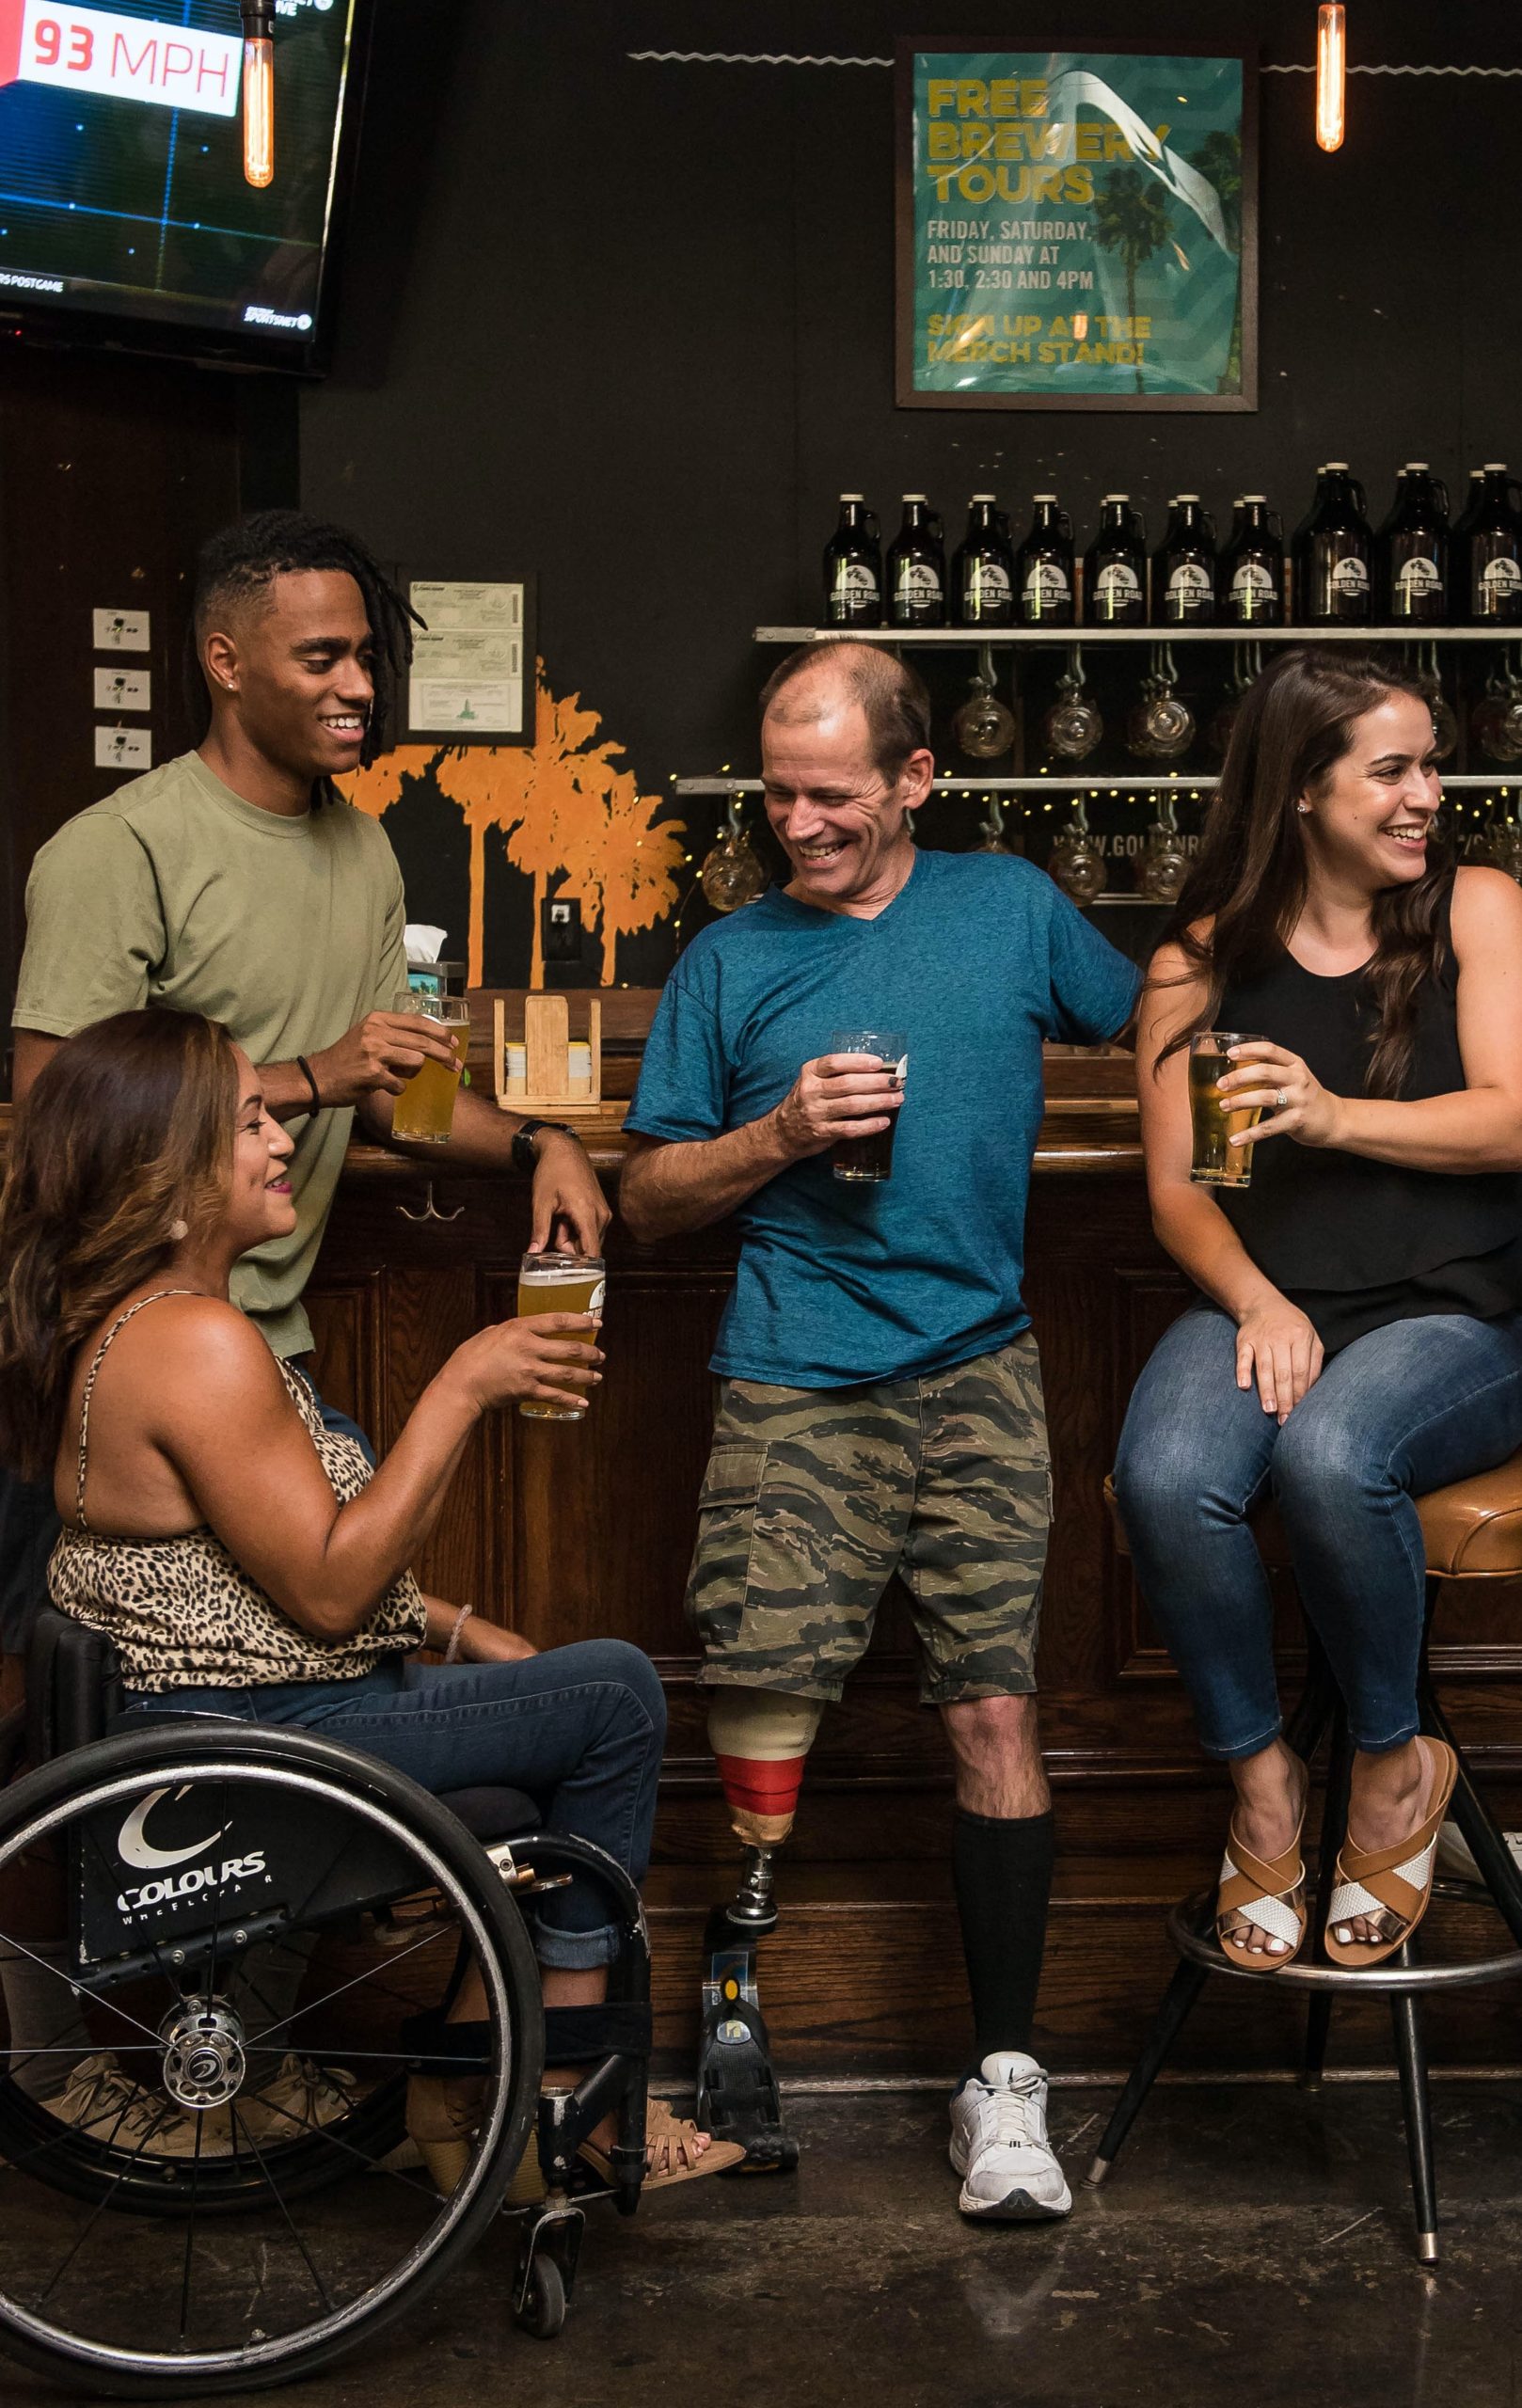 Bild von 4 Personen, zwei Frauen und zwei Männer in einer Bar, die zusammen Bier trinken wovon ein Mann eine Beinprothese hat und eine Frau im Rollstuhl sitzt